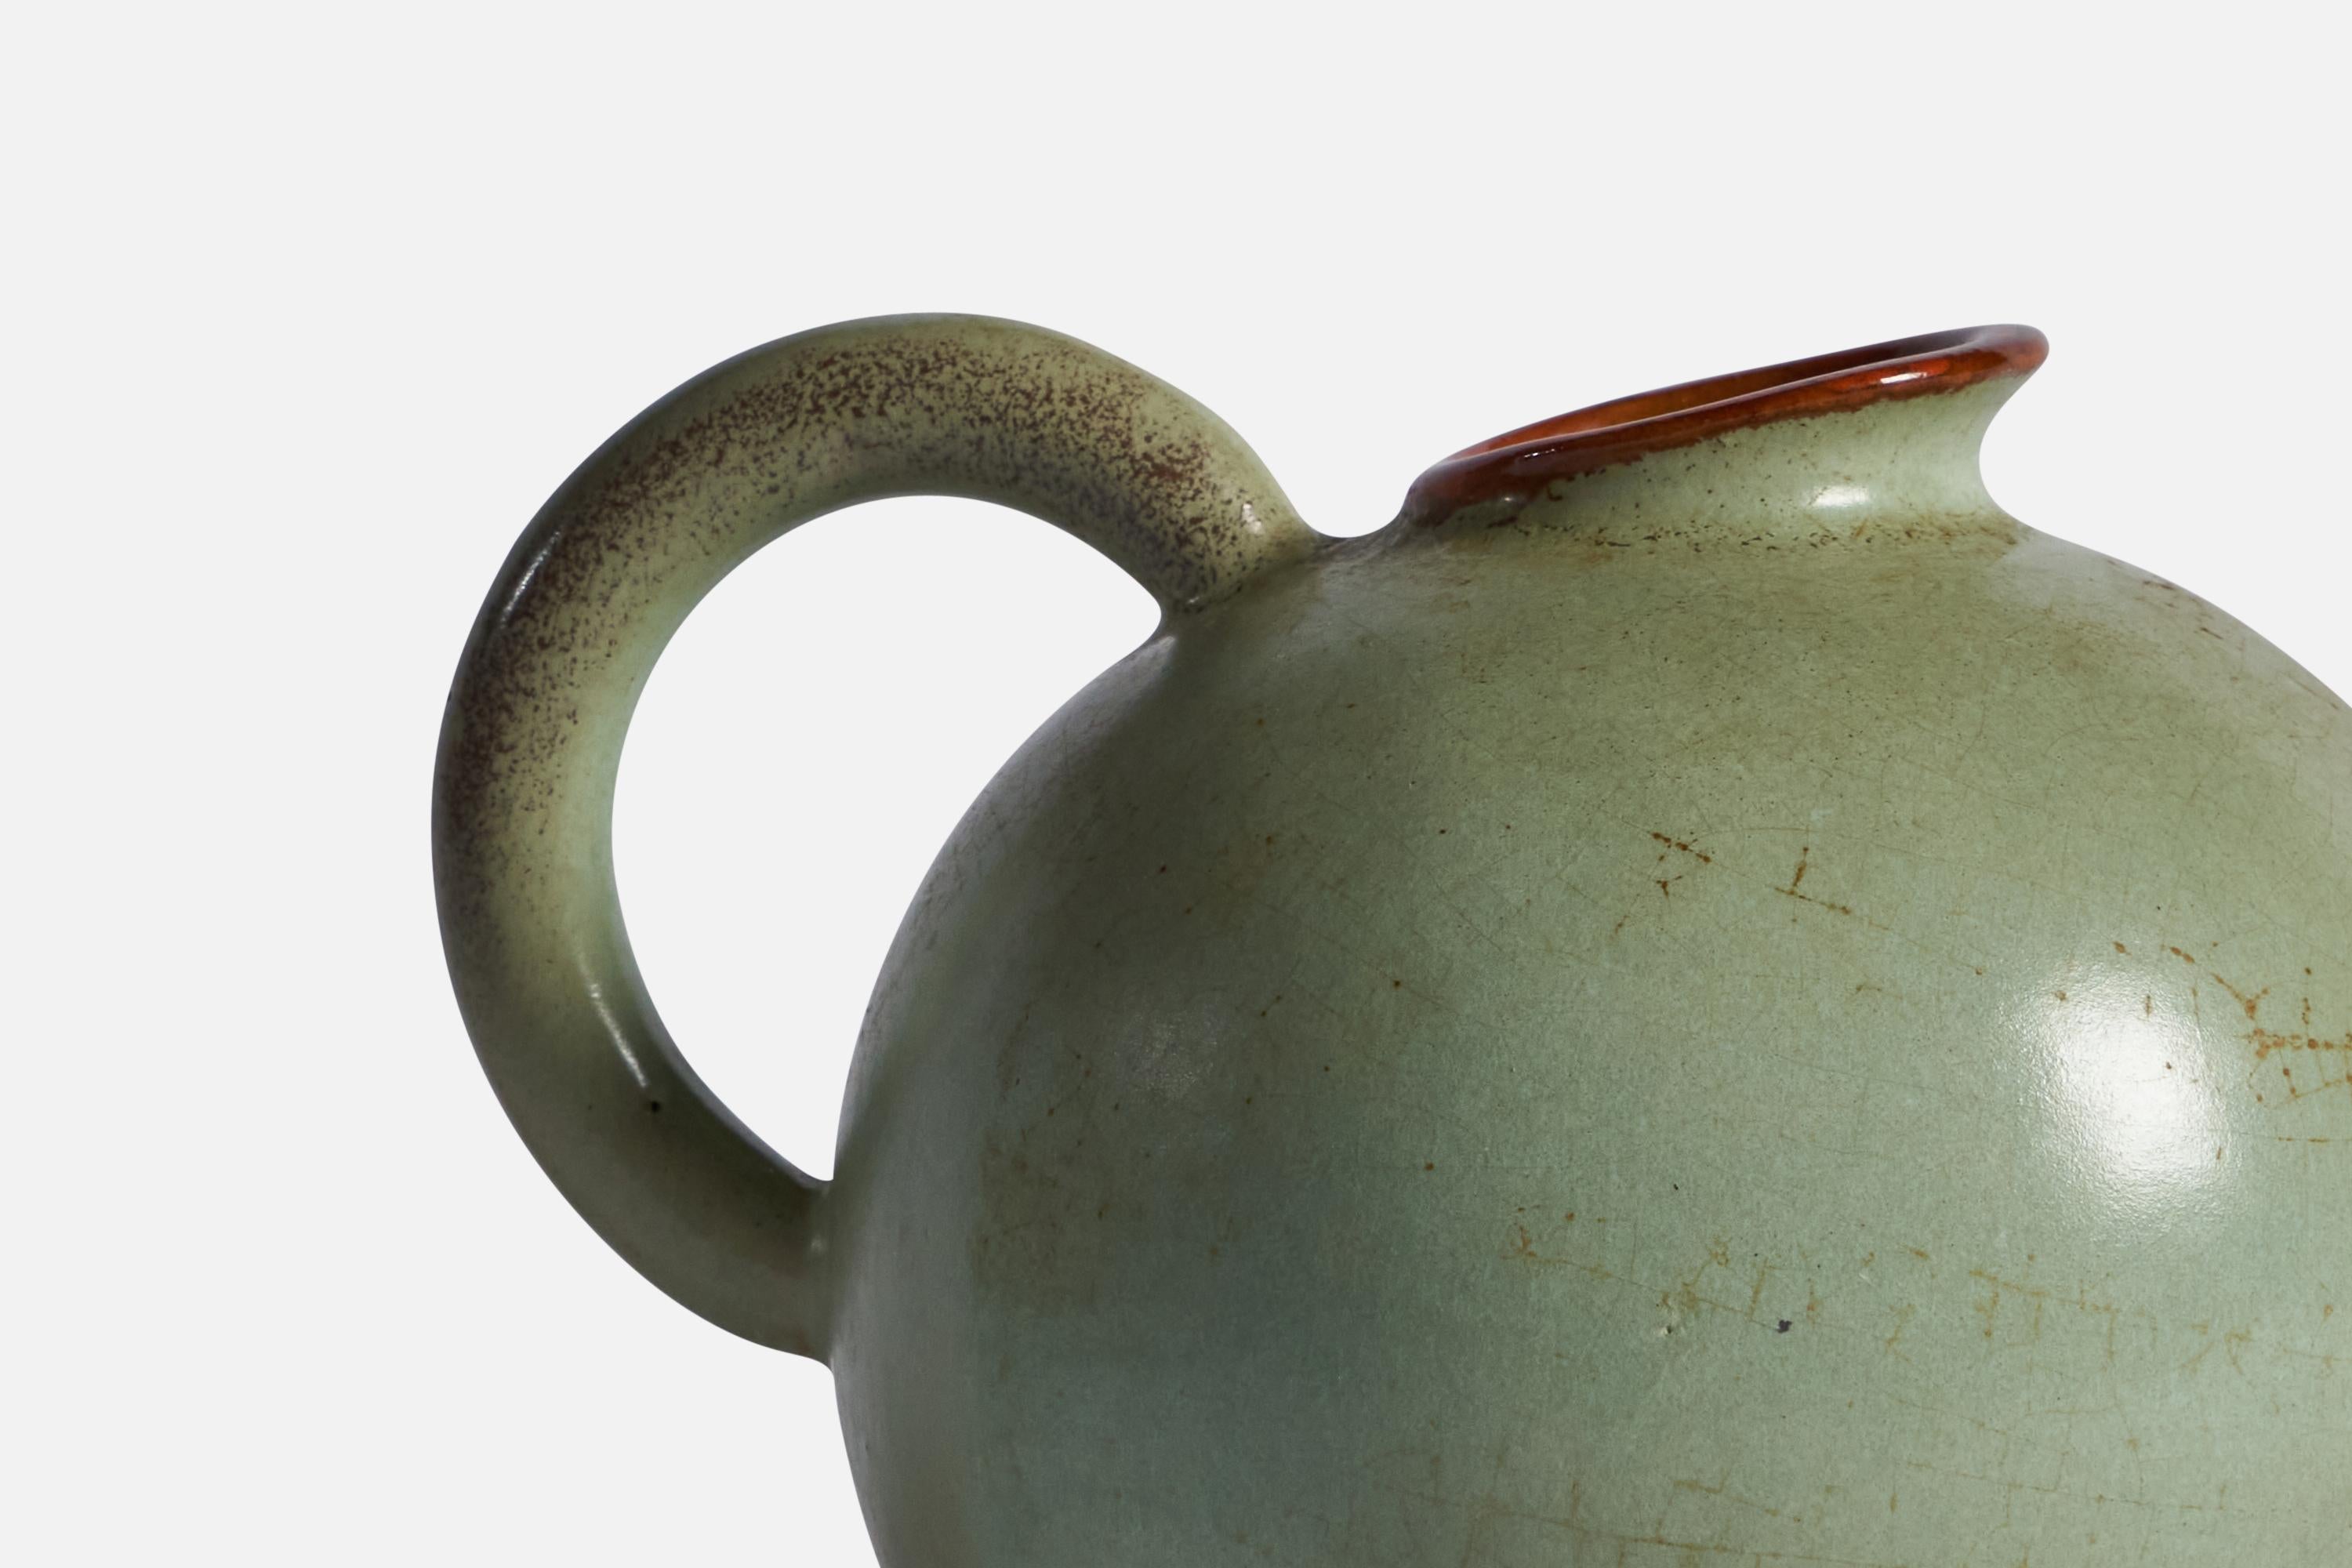 gabriel sweden keramik